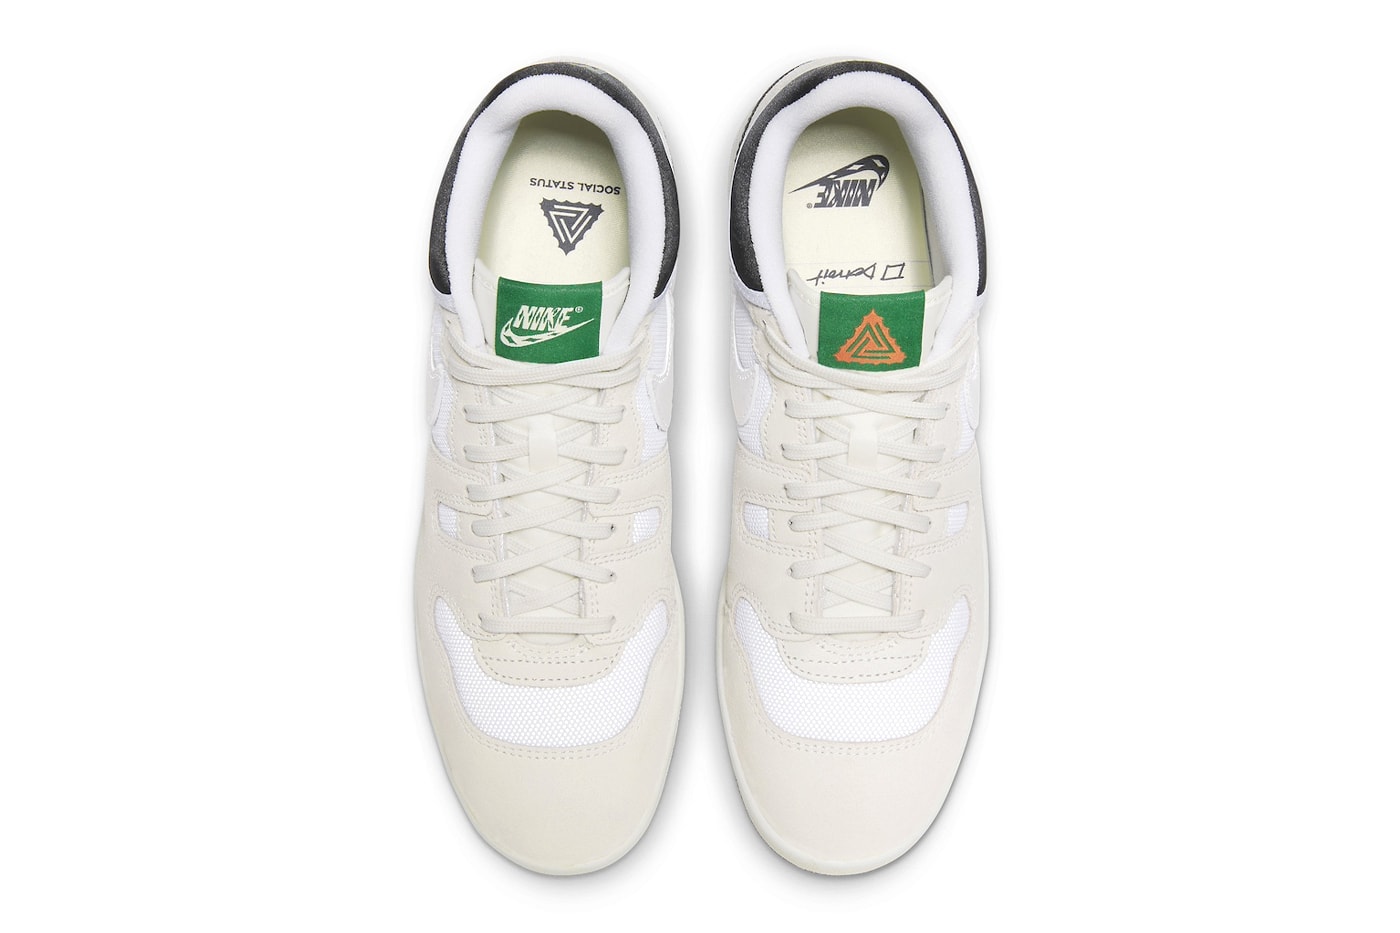 ソーシャル・ステイタスがナイキとの最新コラボアタック“サミットホワイト”を発売 Social Status x Nike Mac Attack "Summer White" Has an Official Release Date DZ4636-100 James Whitaker Group travis scott swoosh tennis shoe